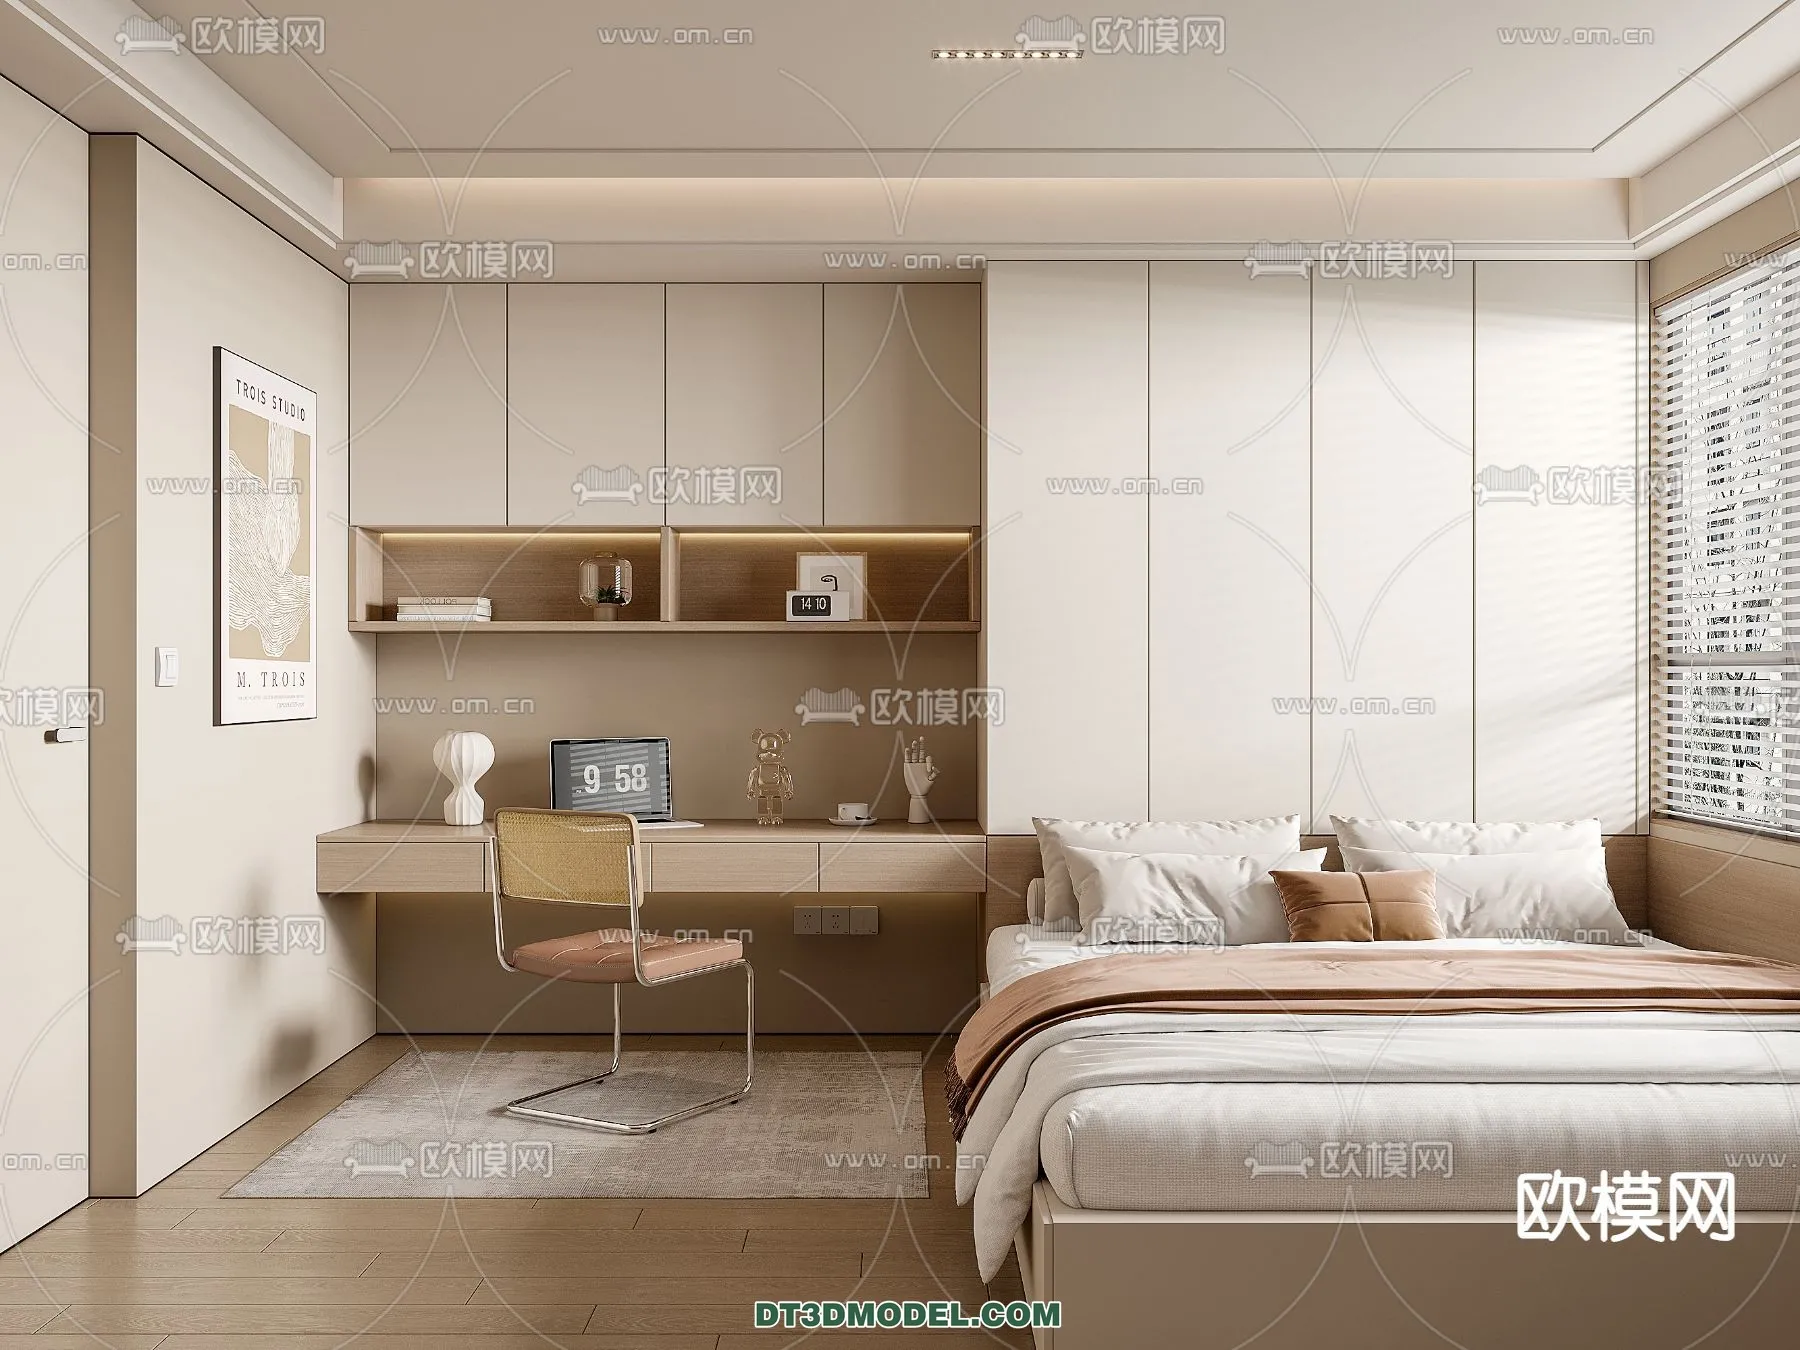 Tatami Bedroom – Japan Bedroom – 3D Scene – 038